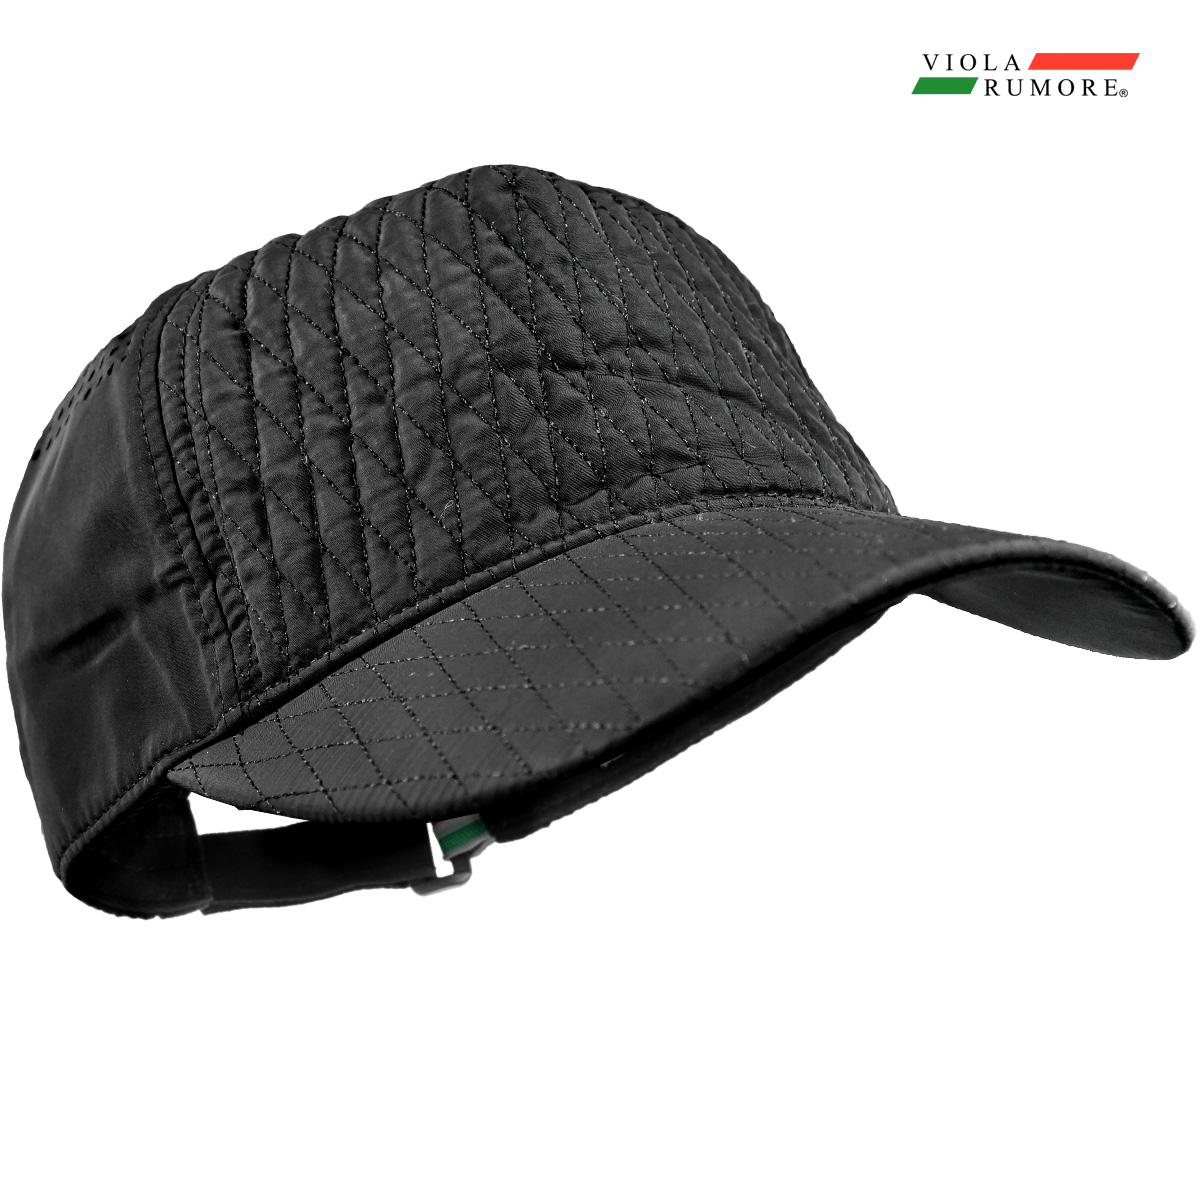 VIOLA rumore ヴィオラ ビオラ メッシュキャップ パンチング ダイヤキルト メンズ サイズ調整可能 帽子 mens(ブラック黒) 11350